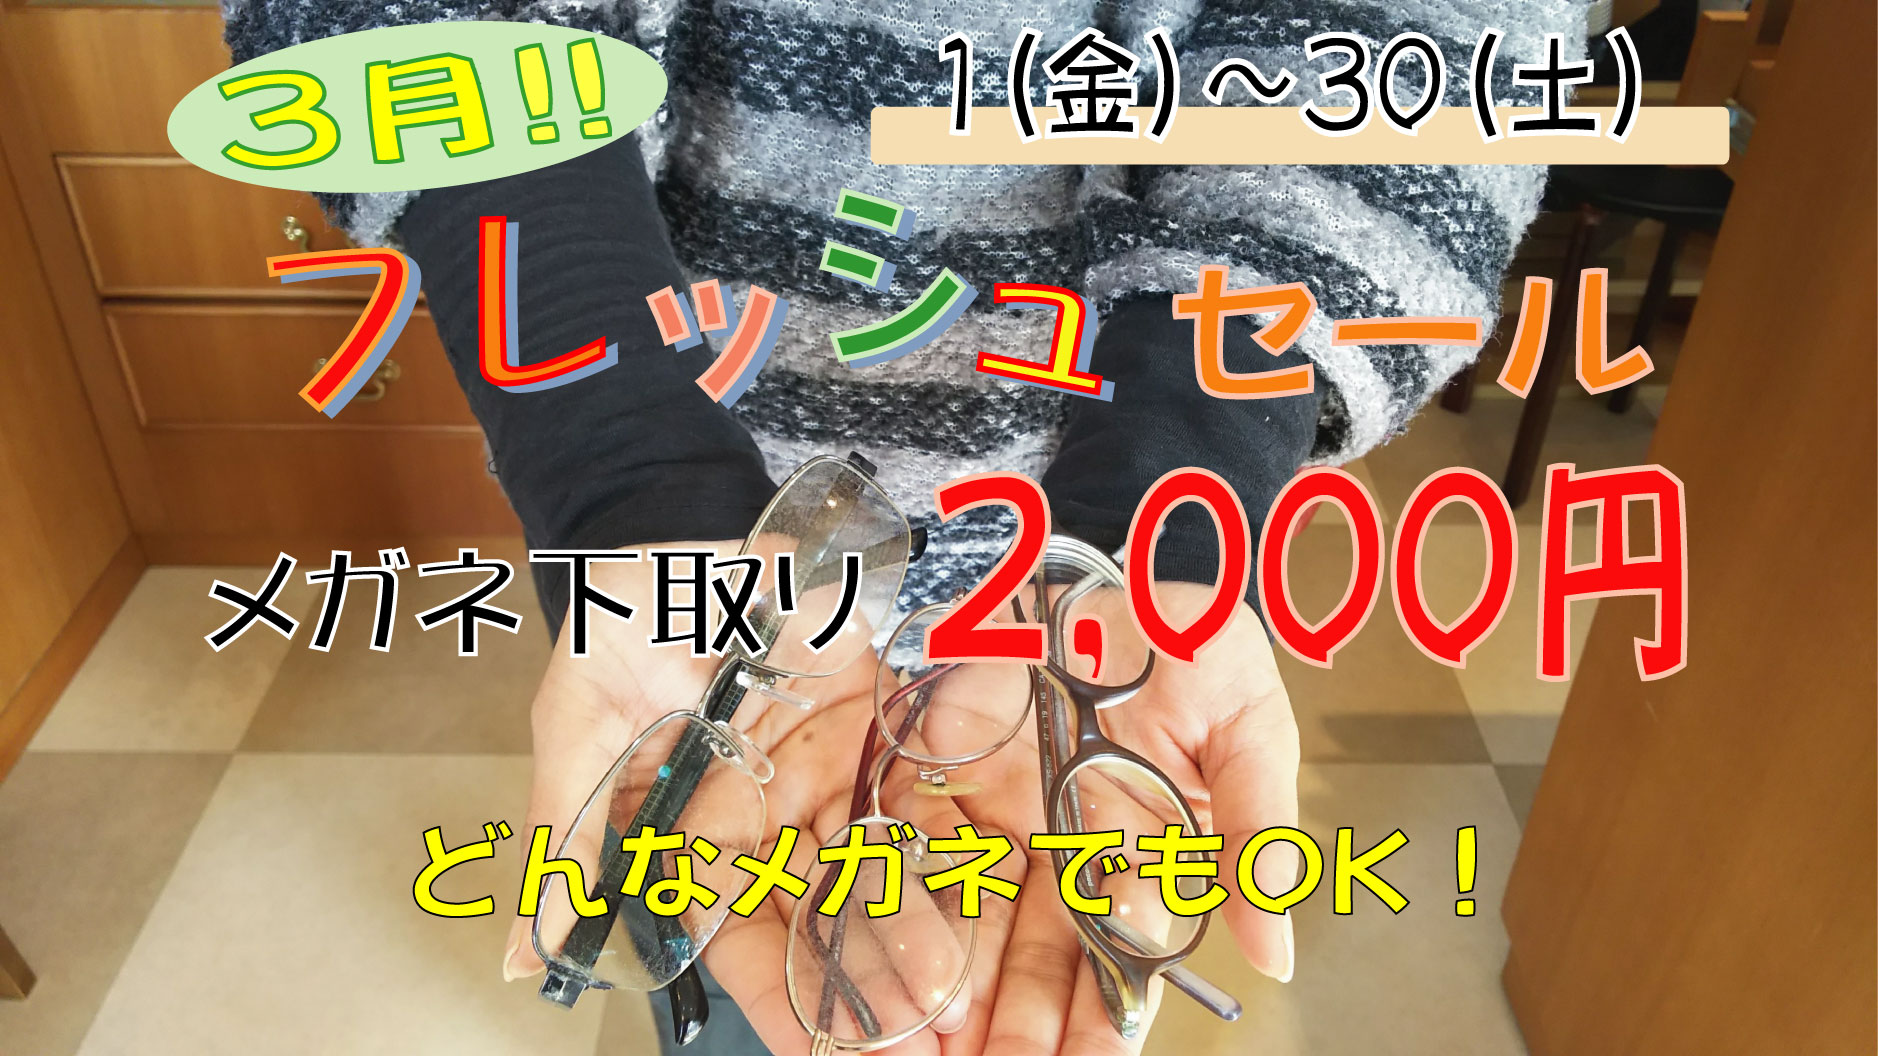 http://www.root-ex.co.jp/sanuma/2019/03/01/000/FB.jpg